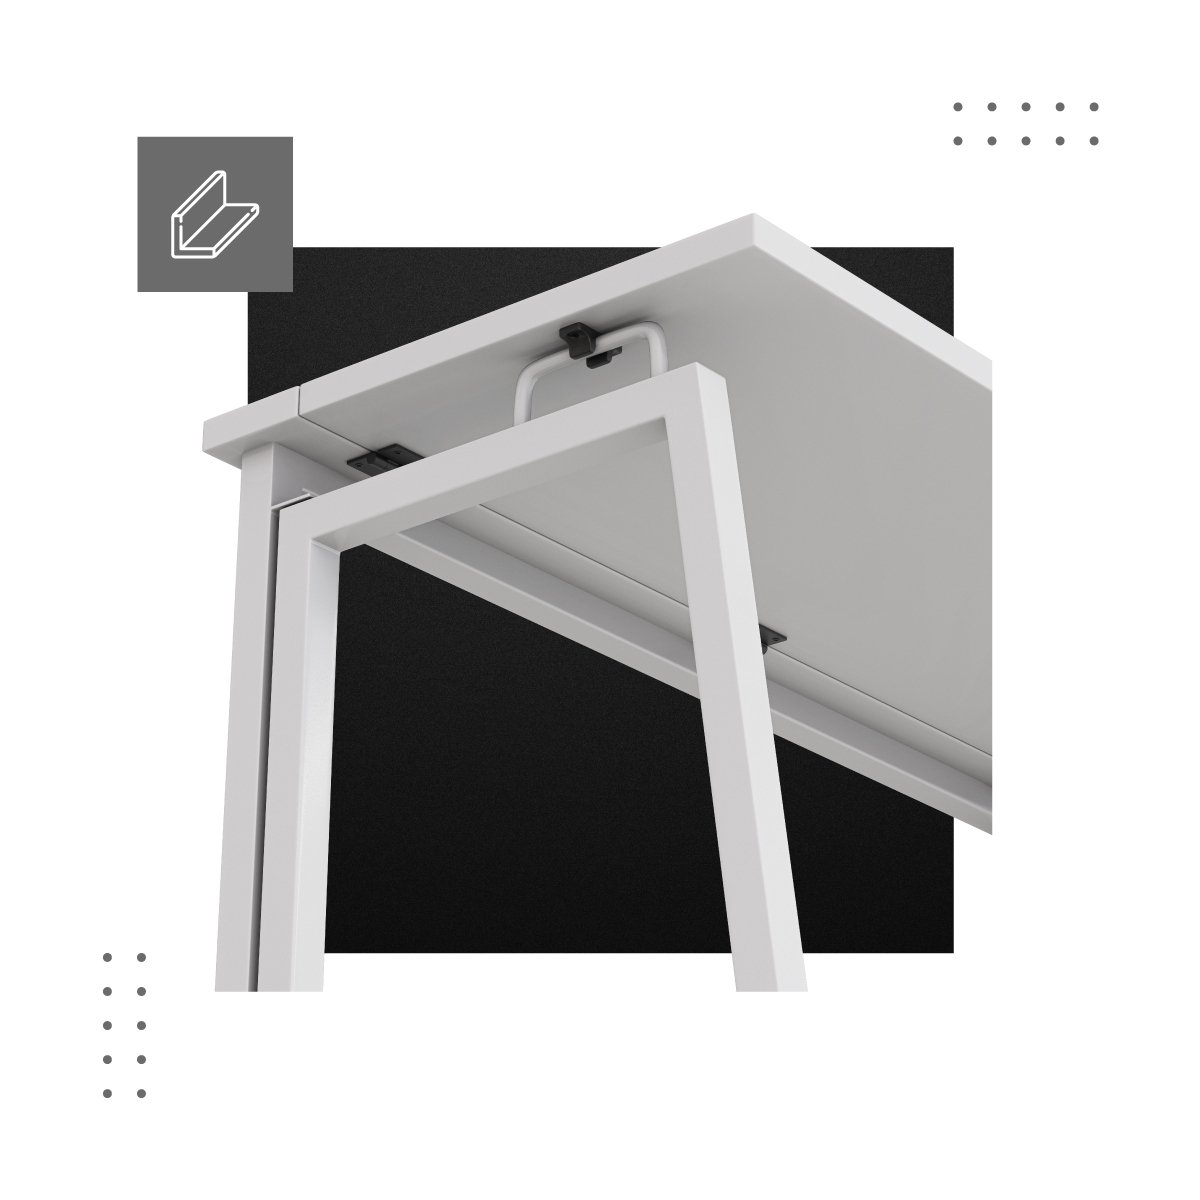 Wzmocniona konstrukcja składane biurko Leader 1.5